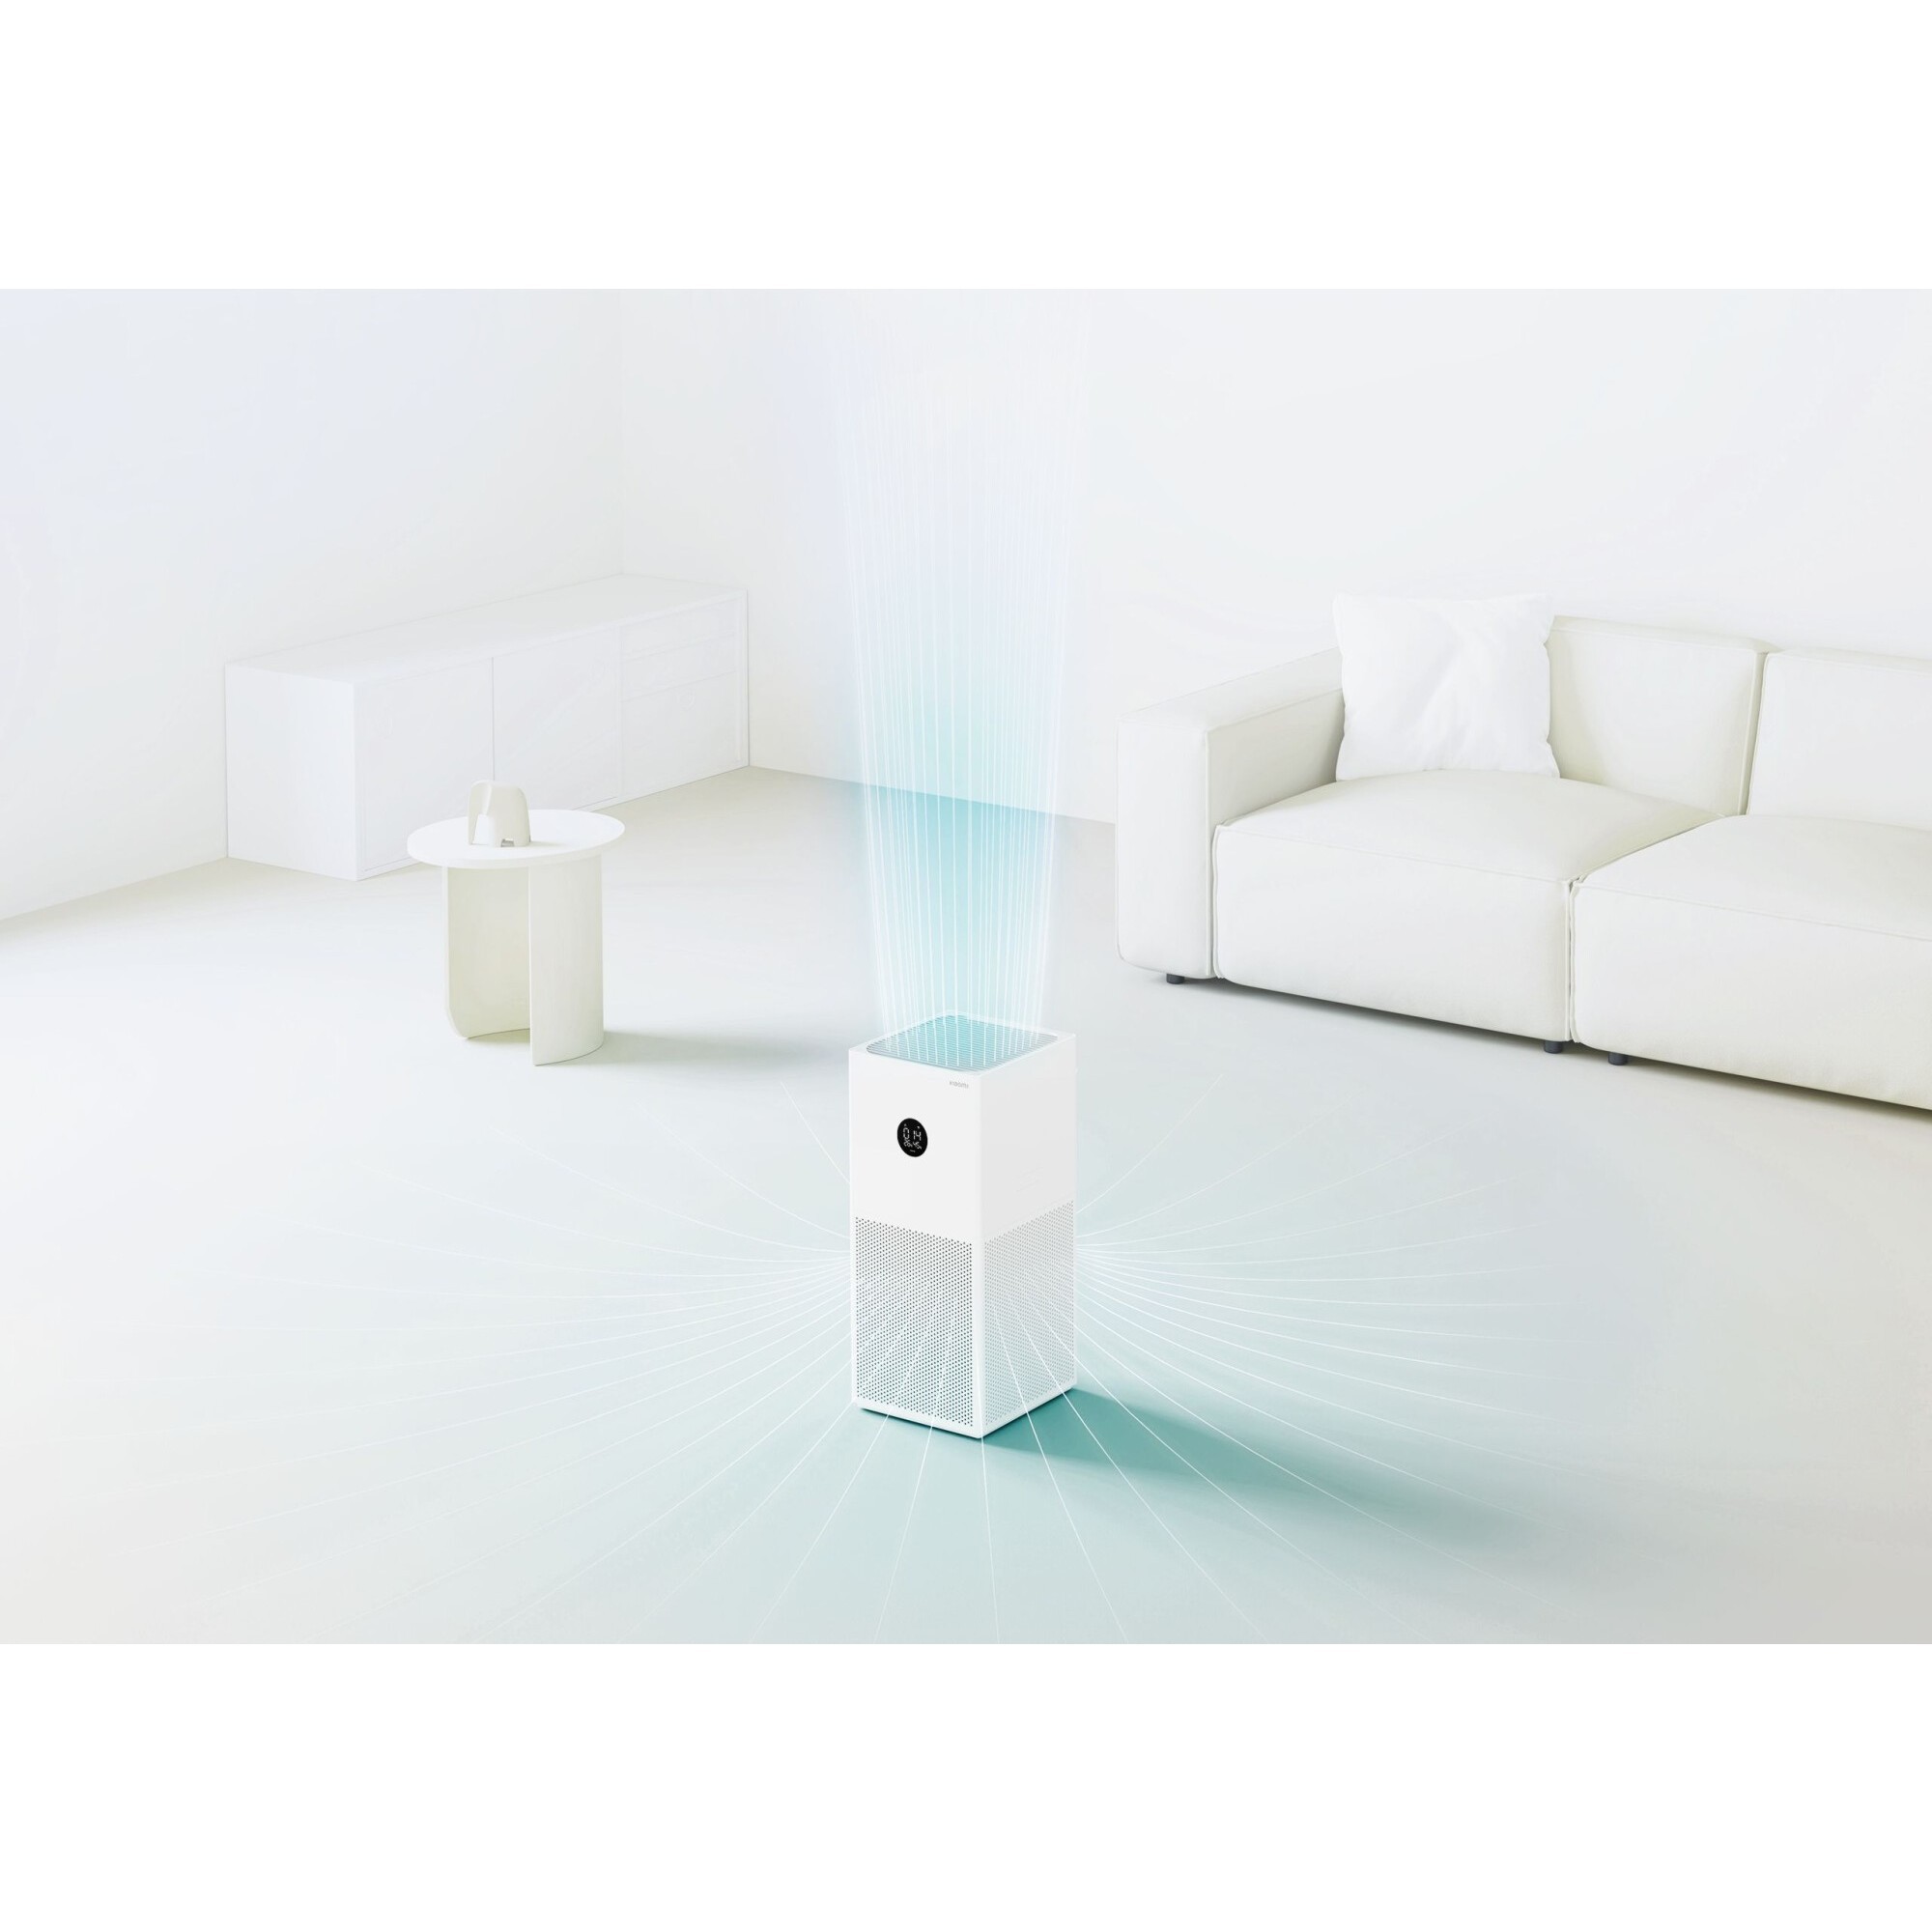 Xiaomi smart air purifier 4 eu